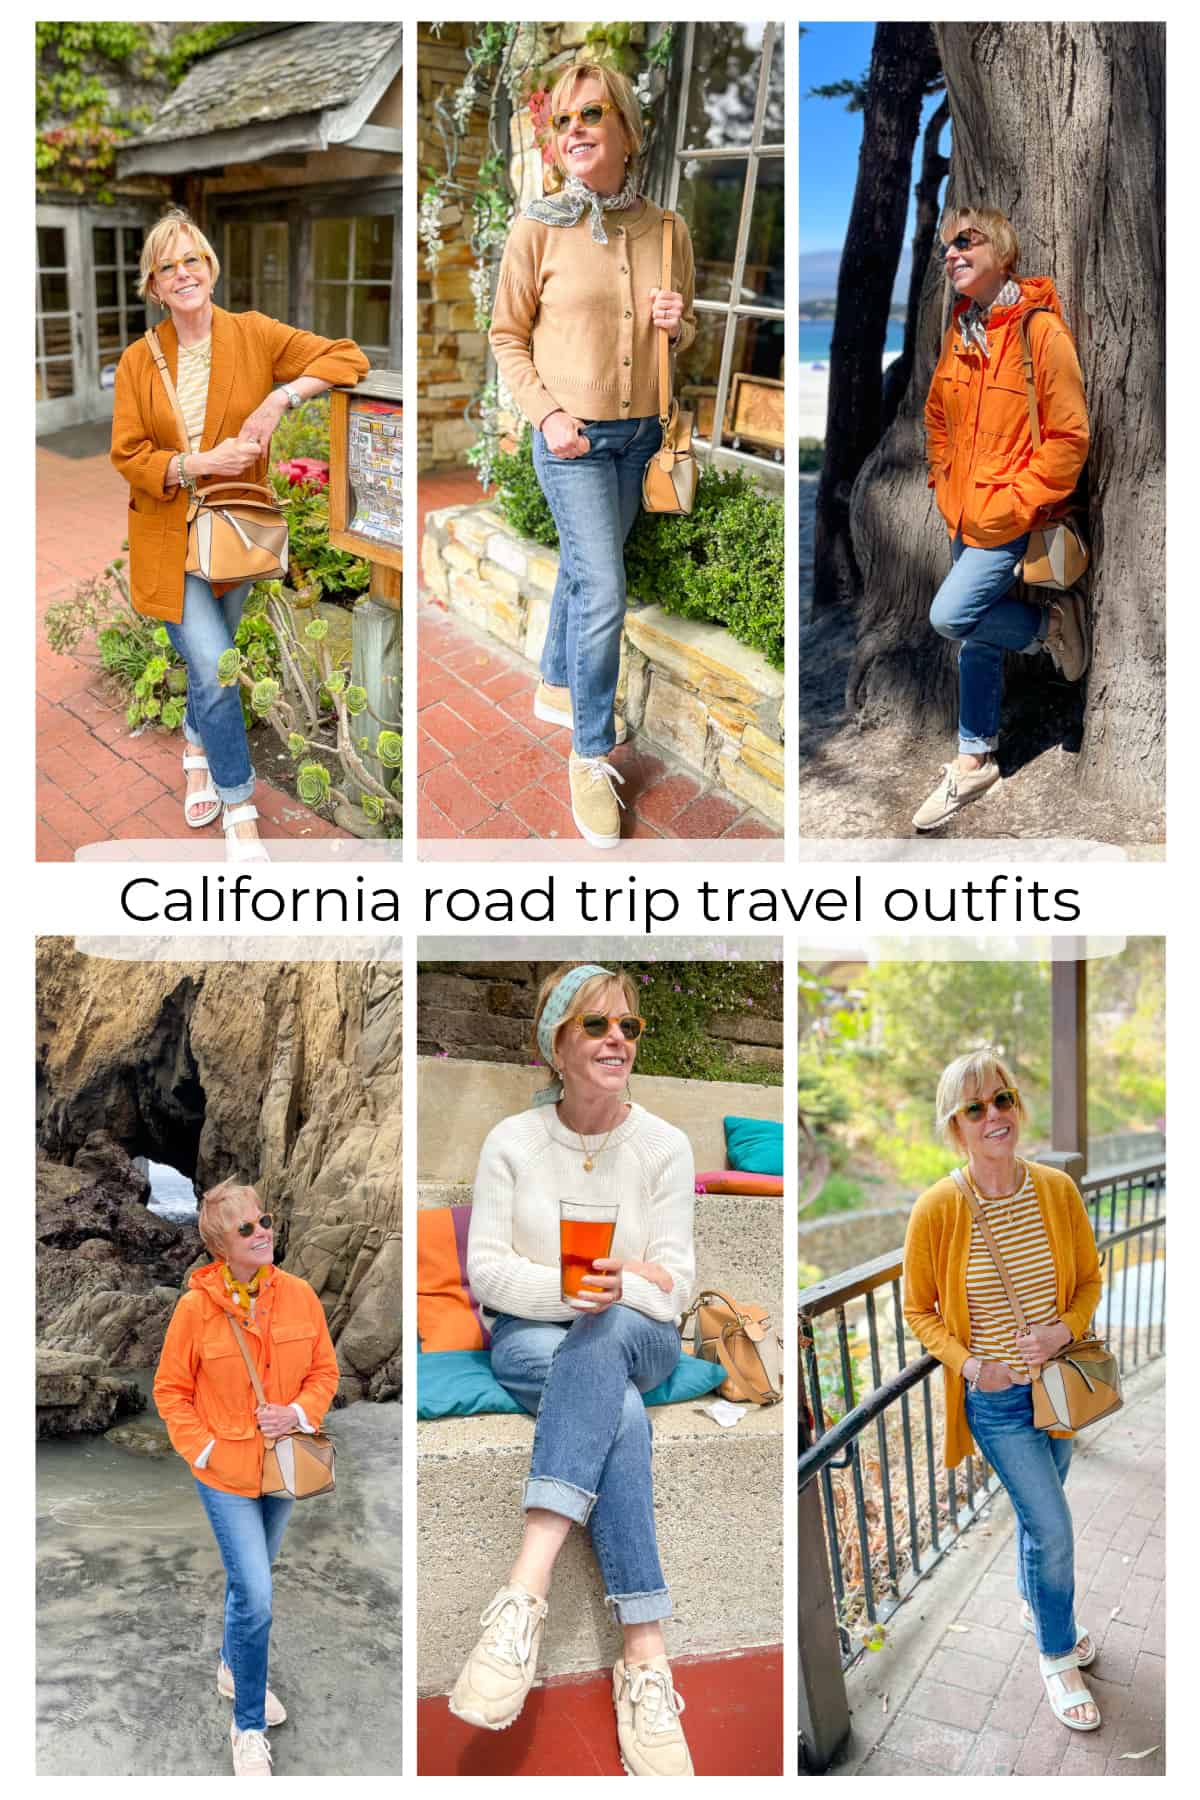 Summer travel outfits, California road trip - une femme d'un certain âge